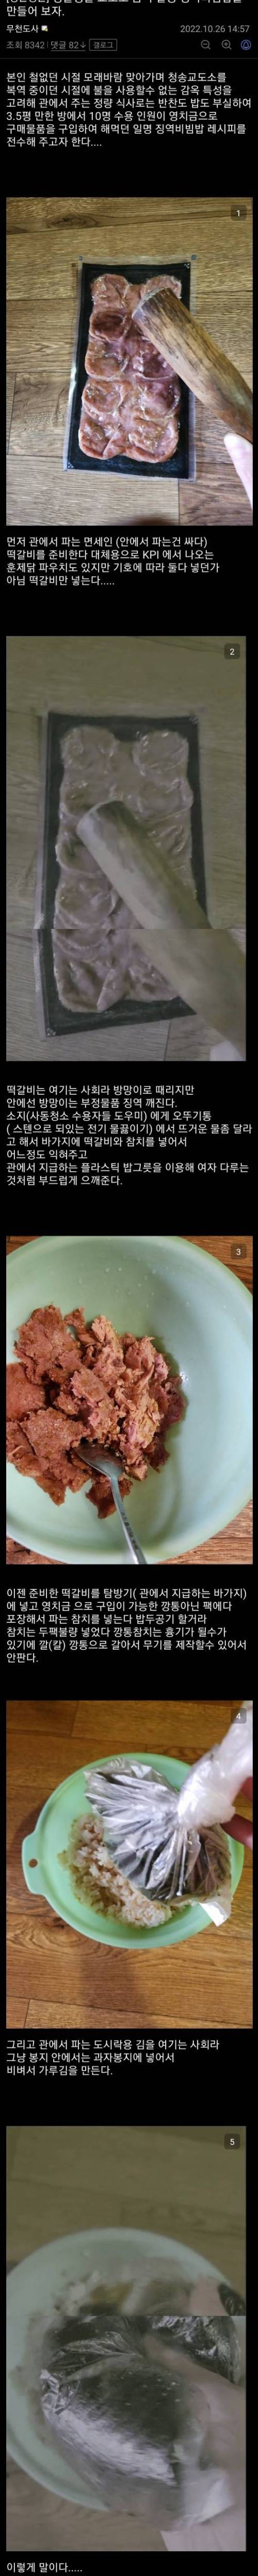 싱글벙글 징역비빔밥